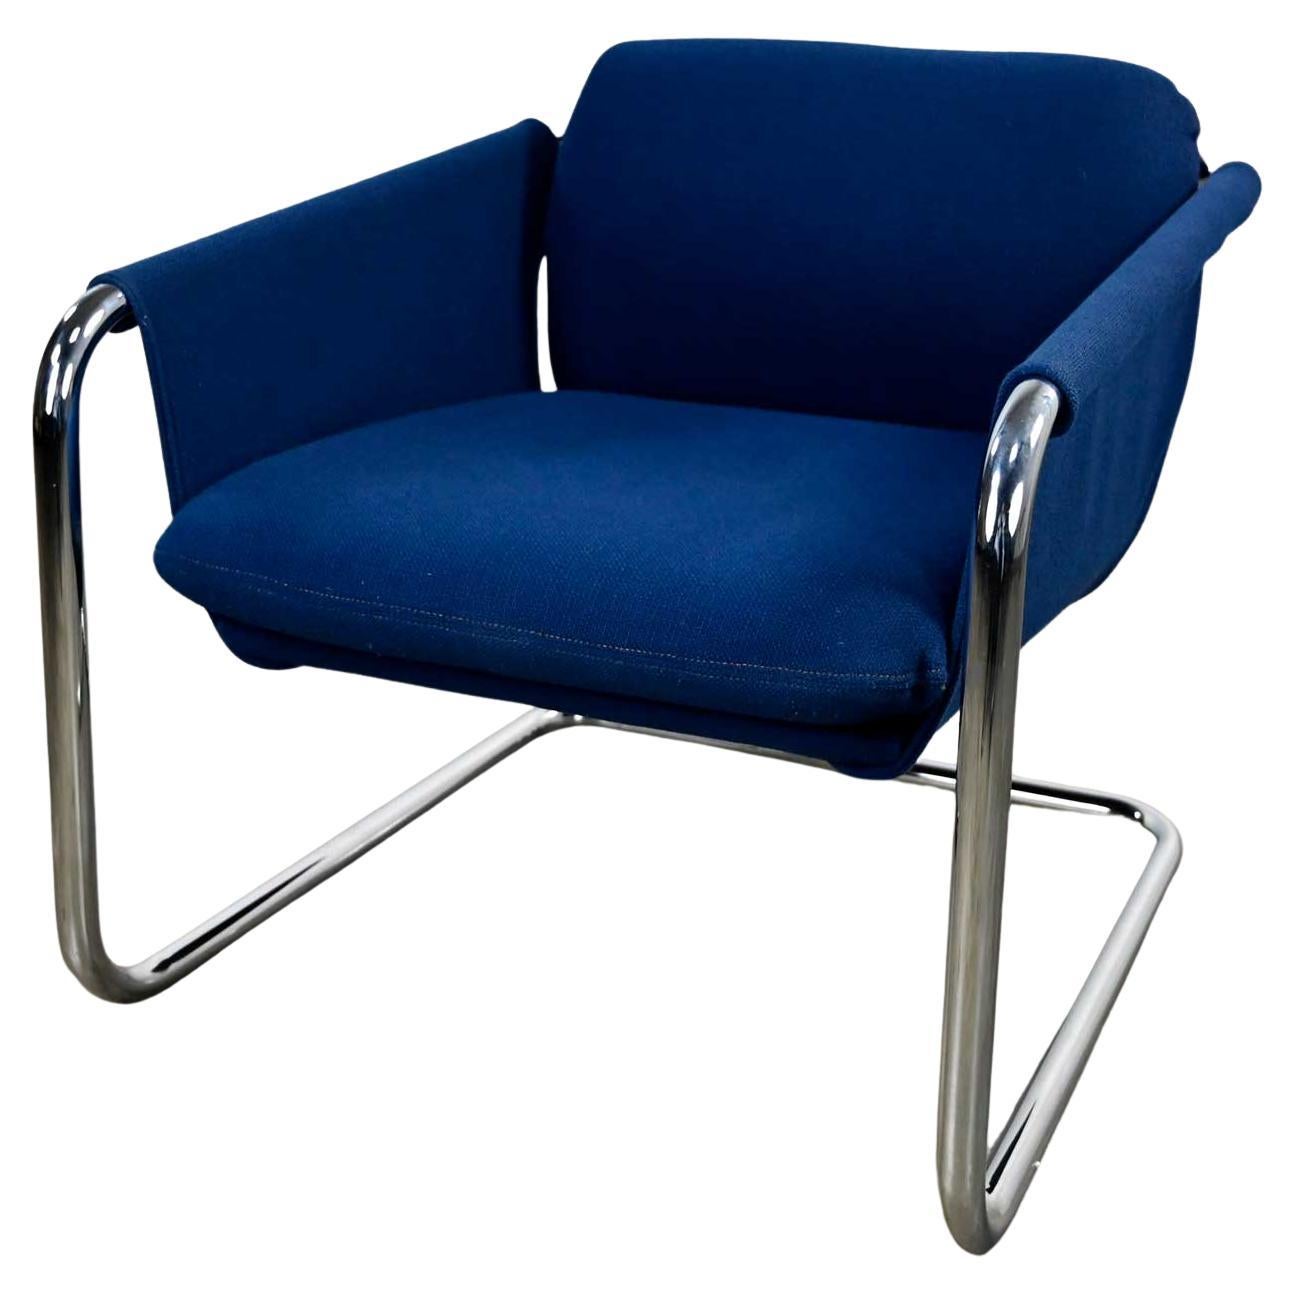 Chaise cantilever en porte-à-faux moderne et chromée bleu royal